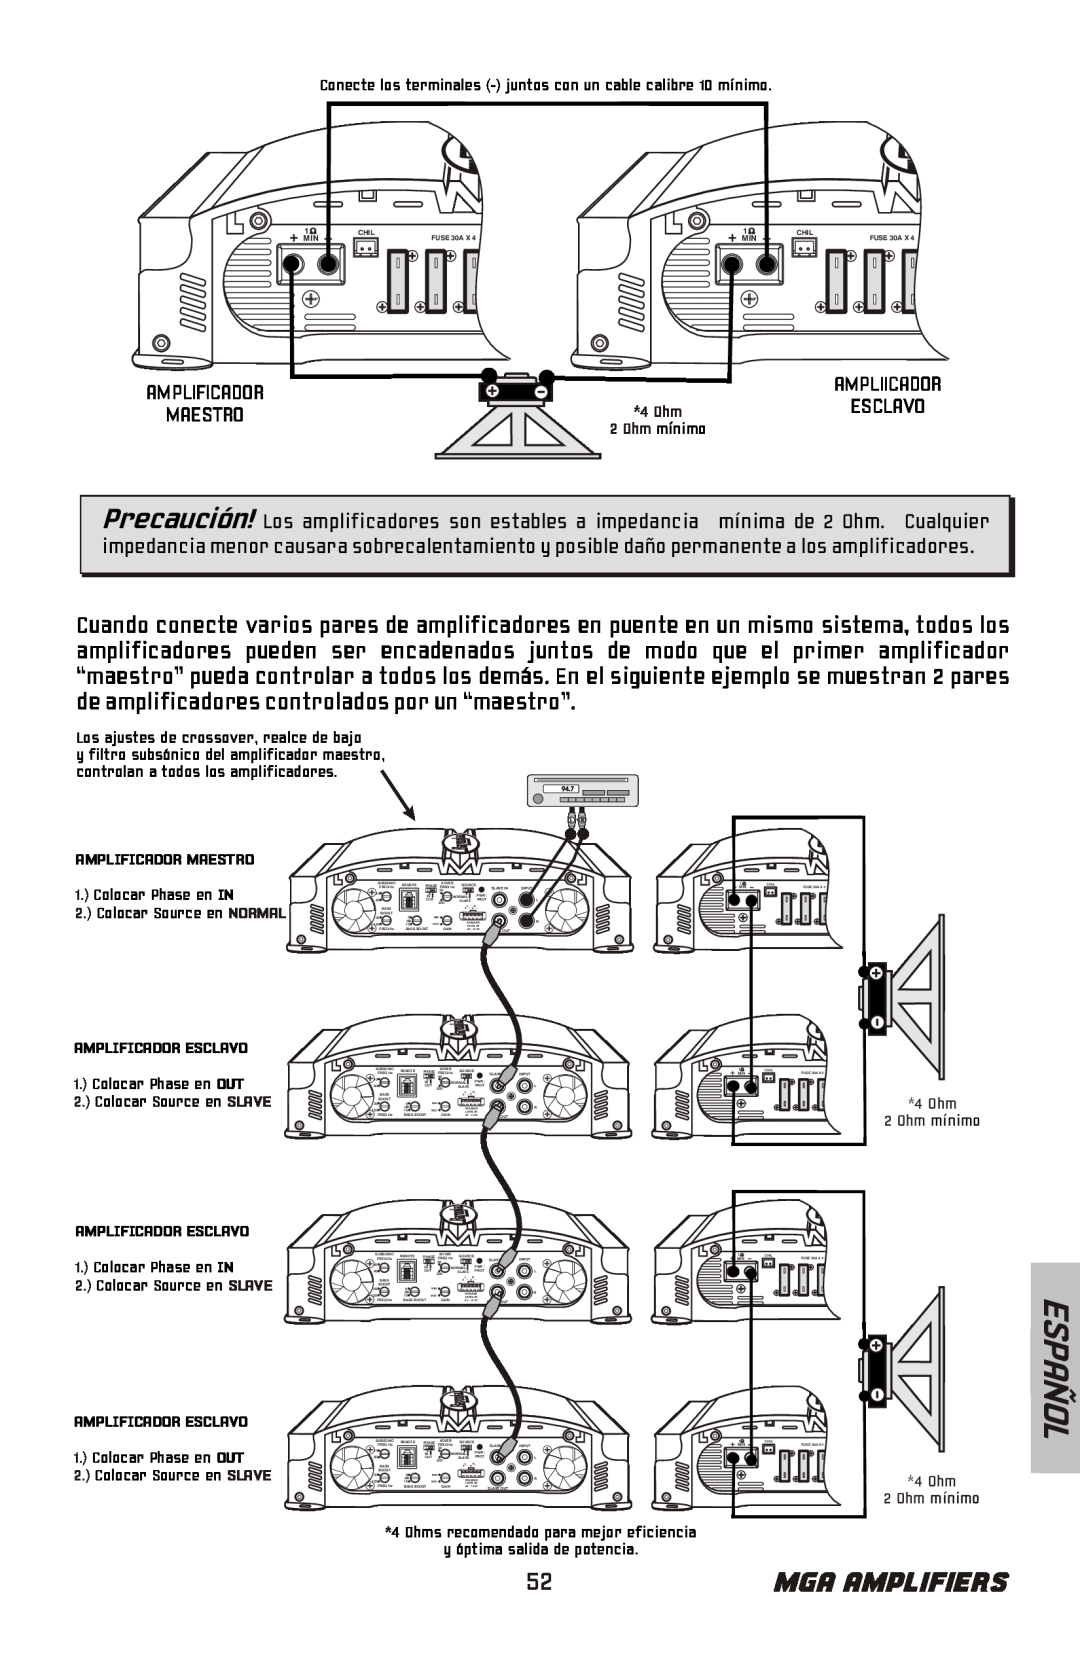 Bazooka MGA11000H, MGA11500H manual Español, Mga Amplifiers, Amplificador Maestro, Amplificador Esclavo 